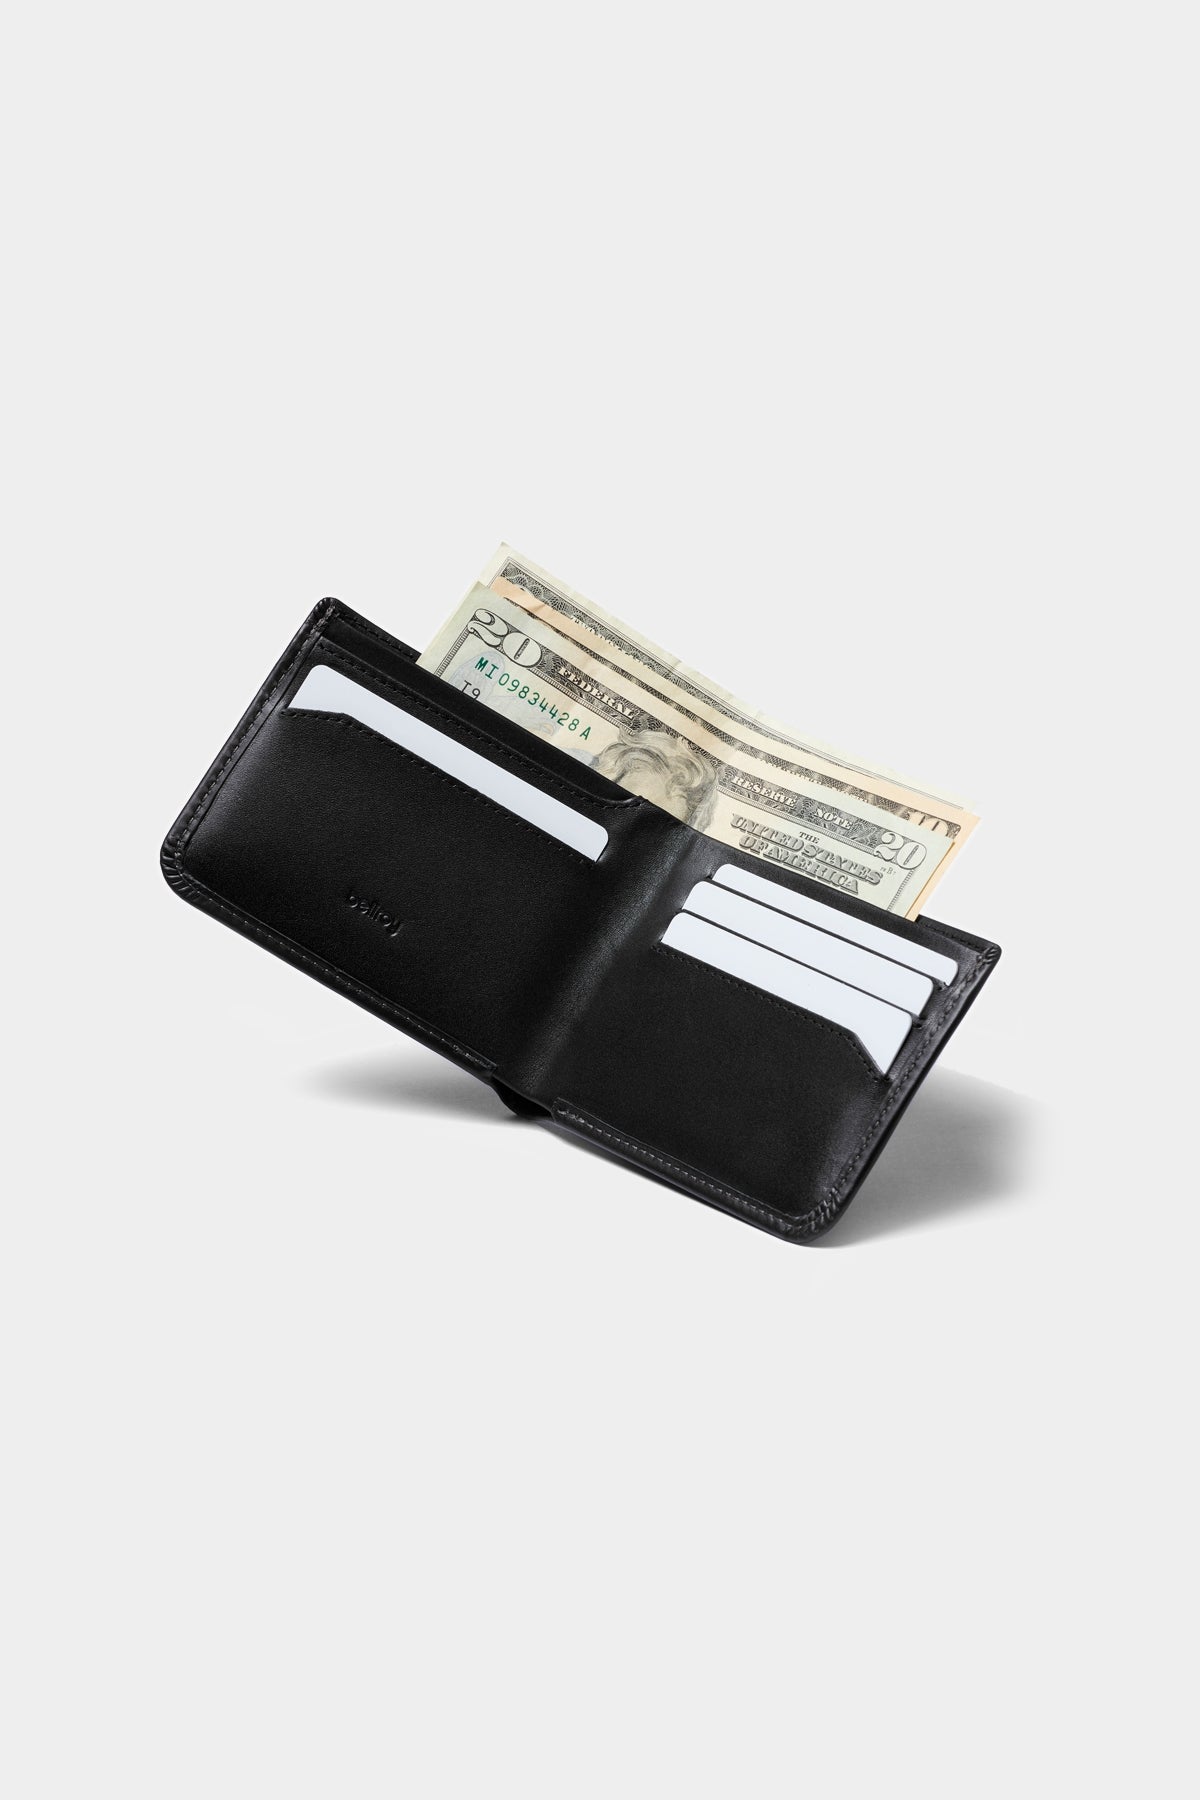 Bellroy Hide & Seek RFID Wallet Black